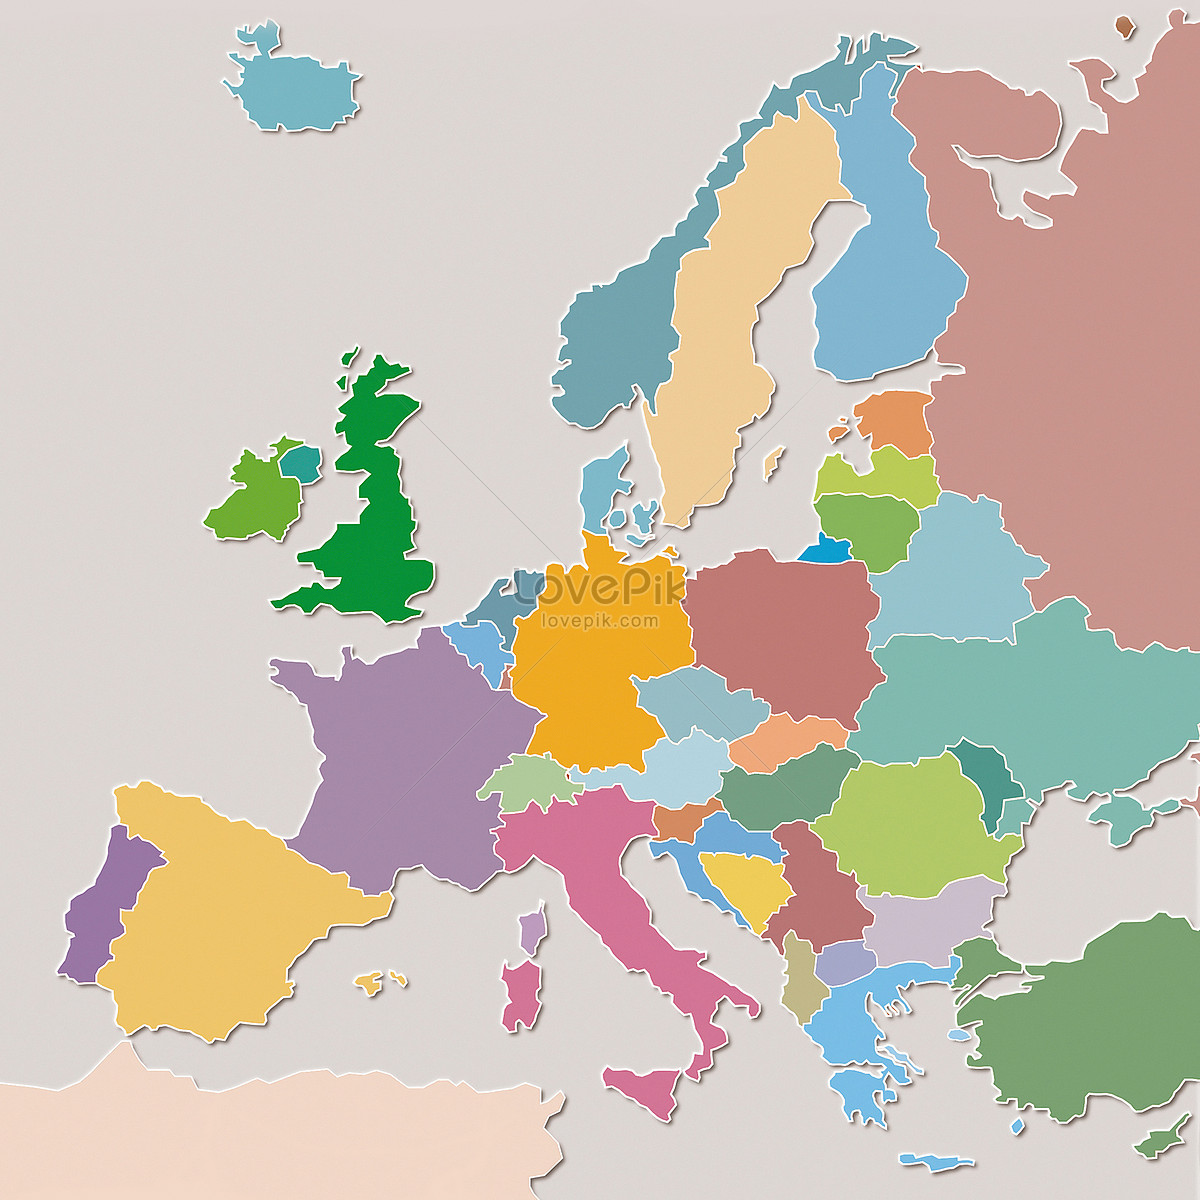 歐洲地圖圖片素材, 歐洲地圖圖案免費下載- Lovepik